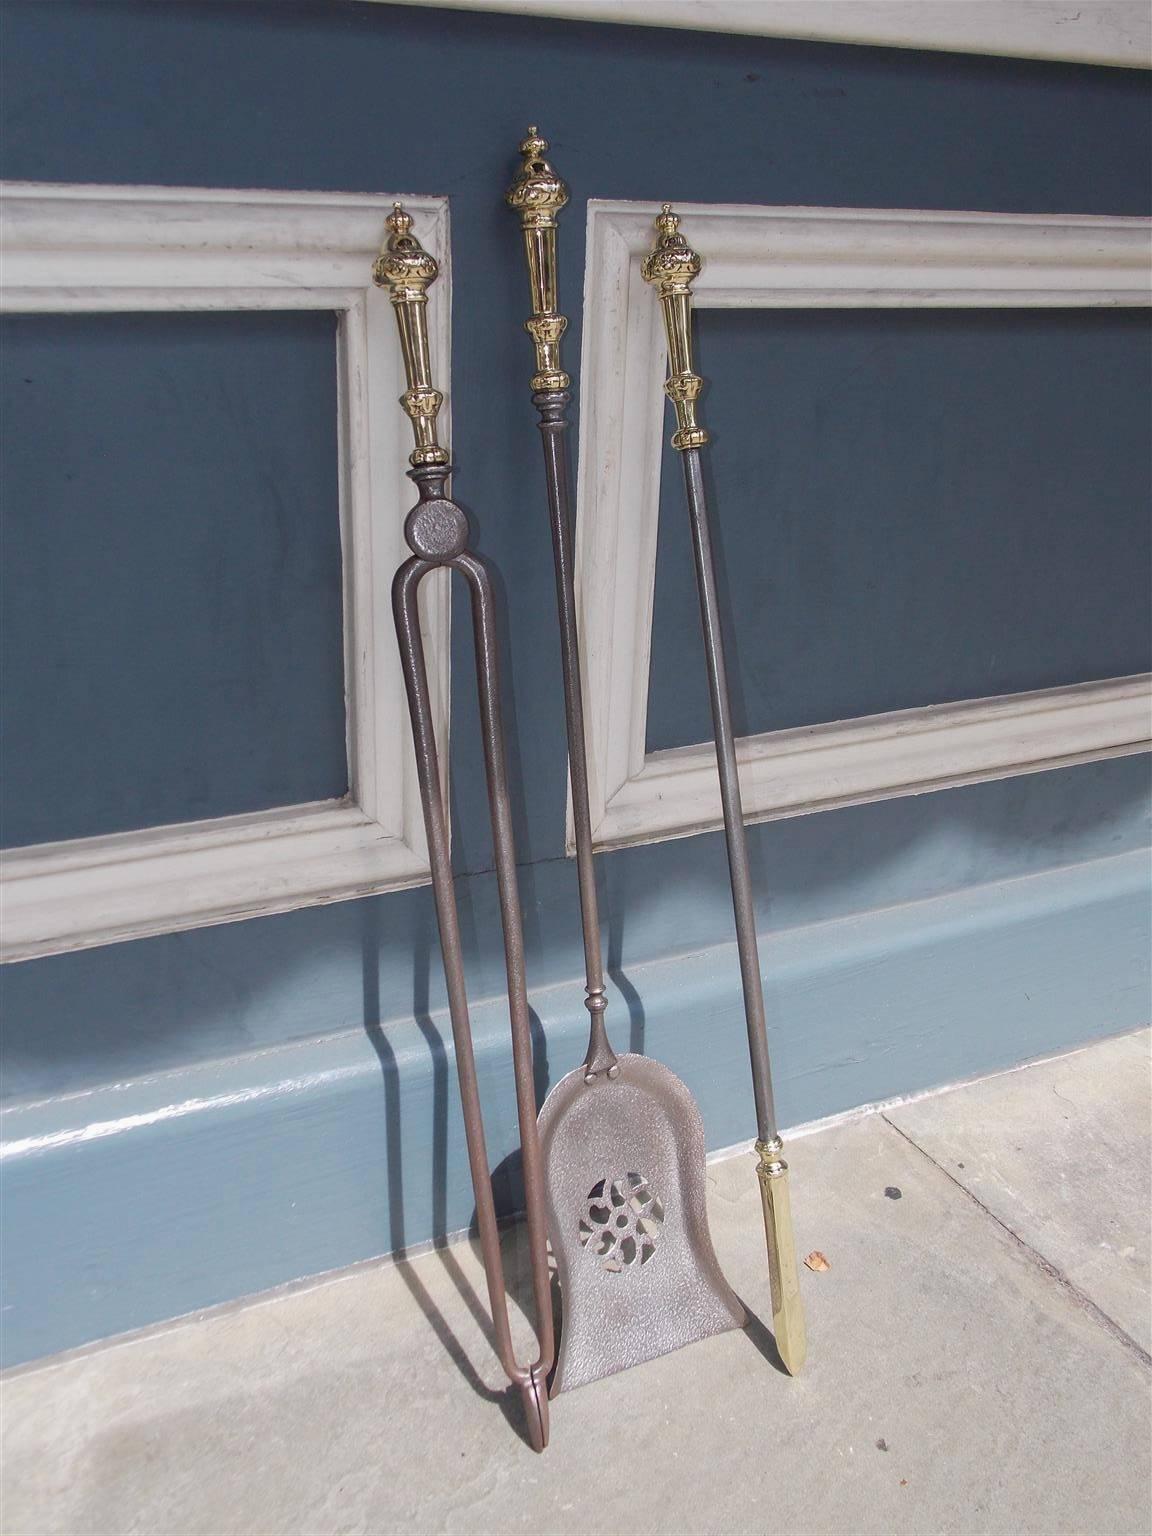 Ensemble de trois outils de cheminée anglais en acier poli et en laiton avec embouts décoratifs en forme d'urne et poignées en forme de feuillage. Ensemble composé d'une pelle fleurie percée, d'une pince et d'un tisonnier à pointe en laiton pour